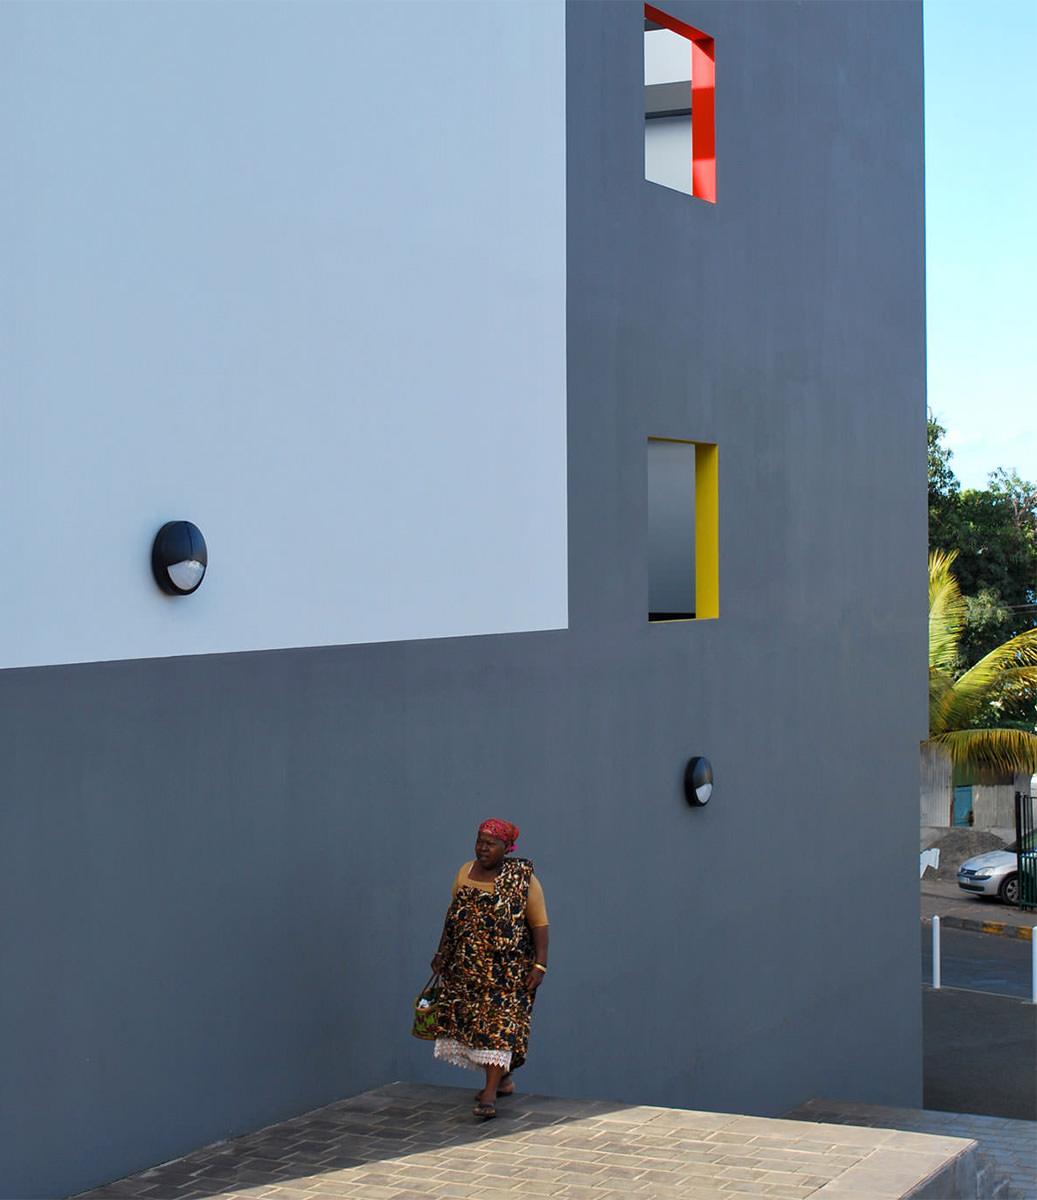 Photographie d'une personne marchant le long de la façade grise avec les ouvertures colorées